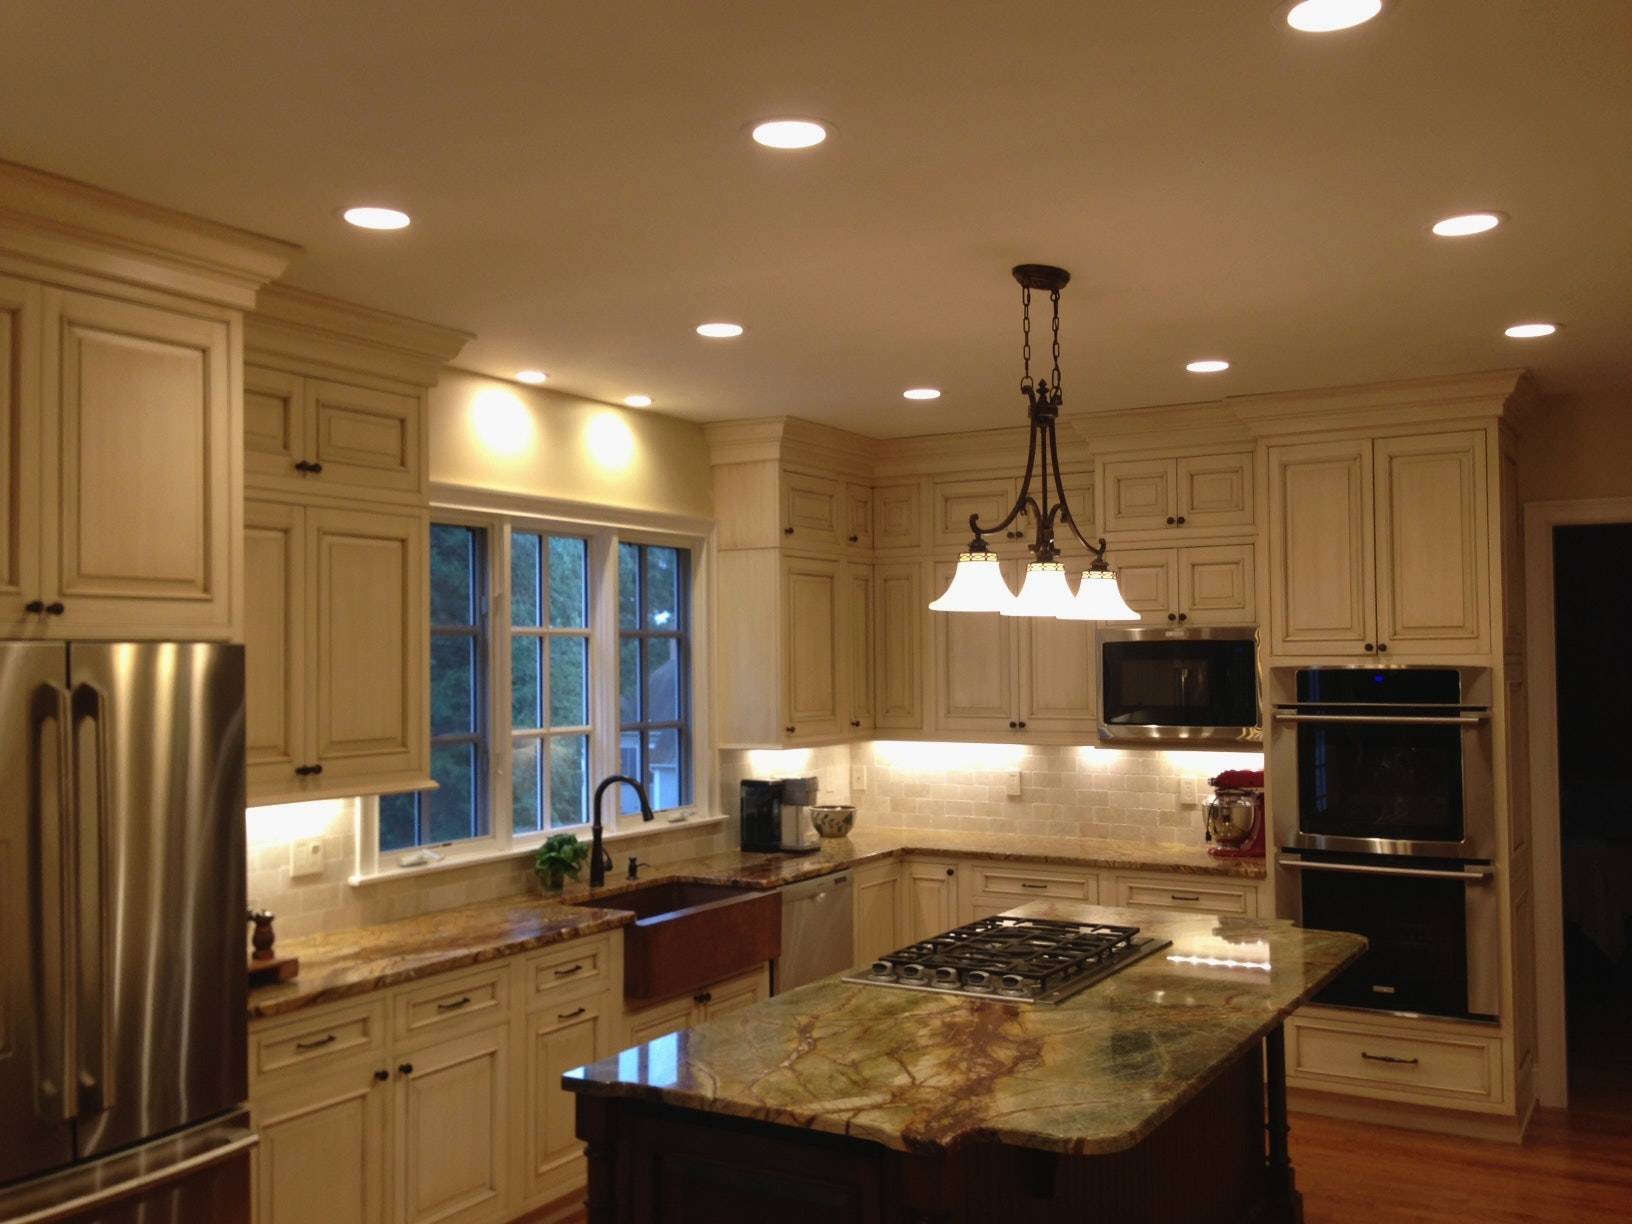 Примеры освещения на кухне с натяжным потолком